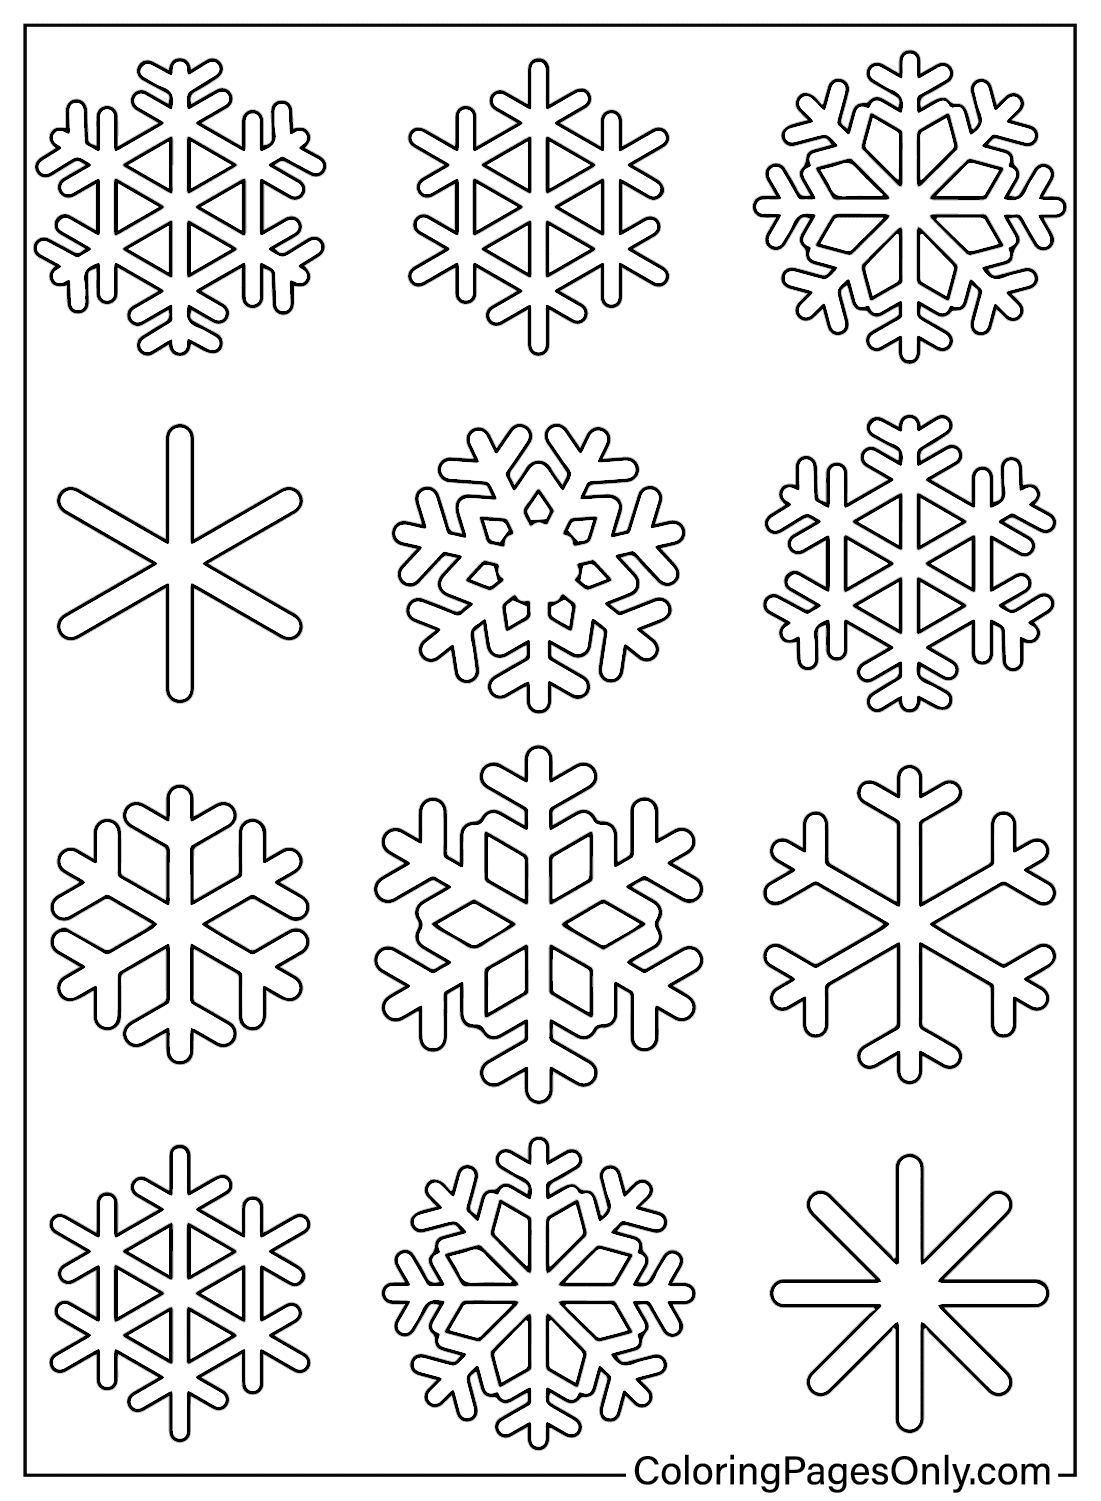 Página colorida do floco de neve de Snowflake